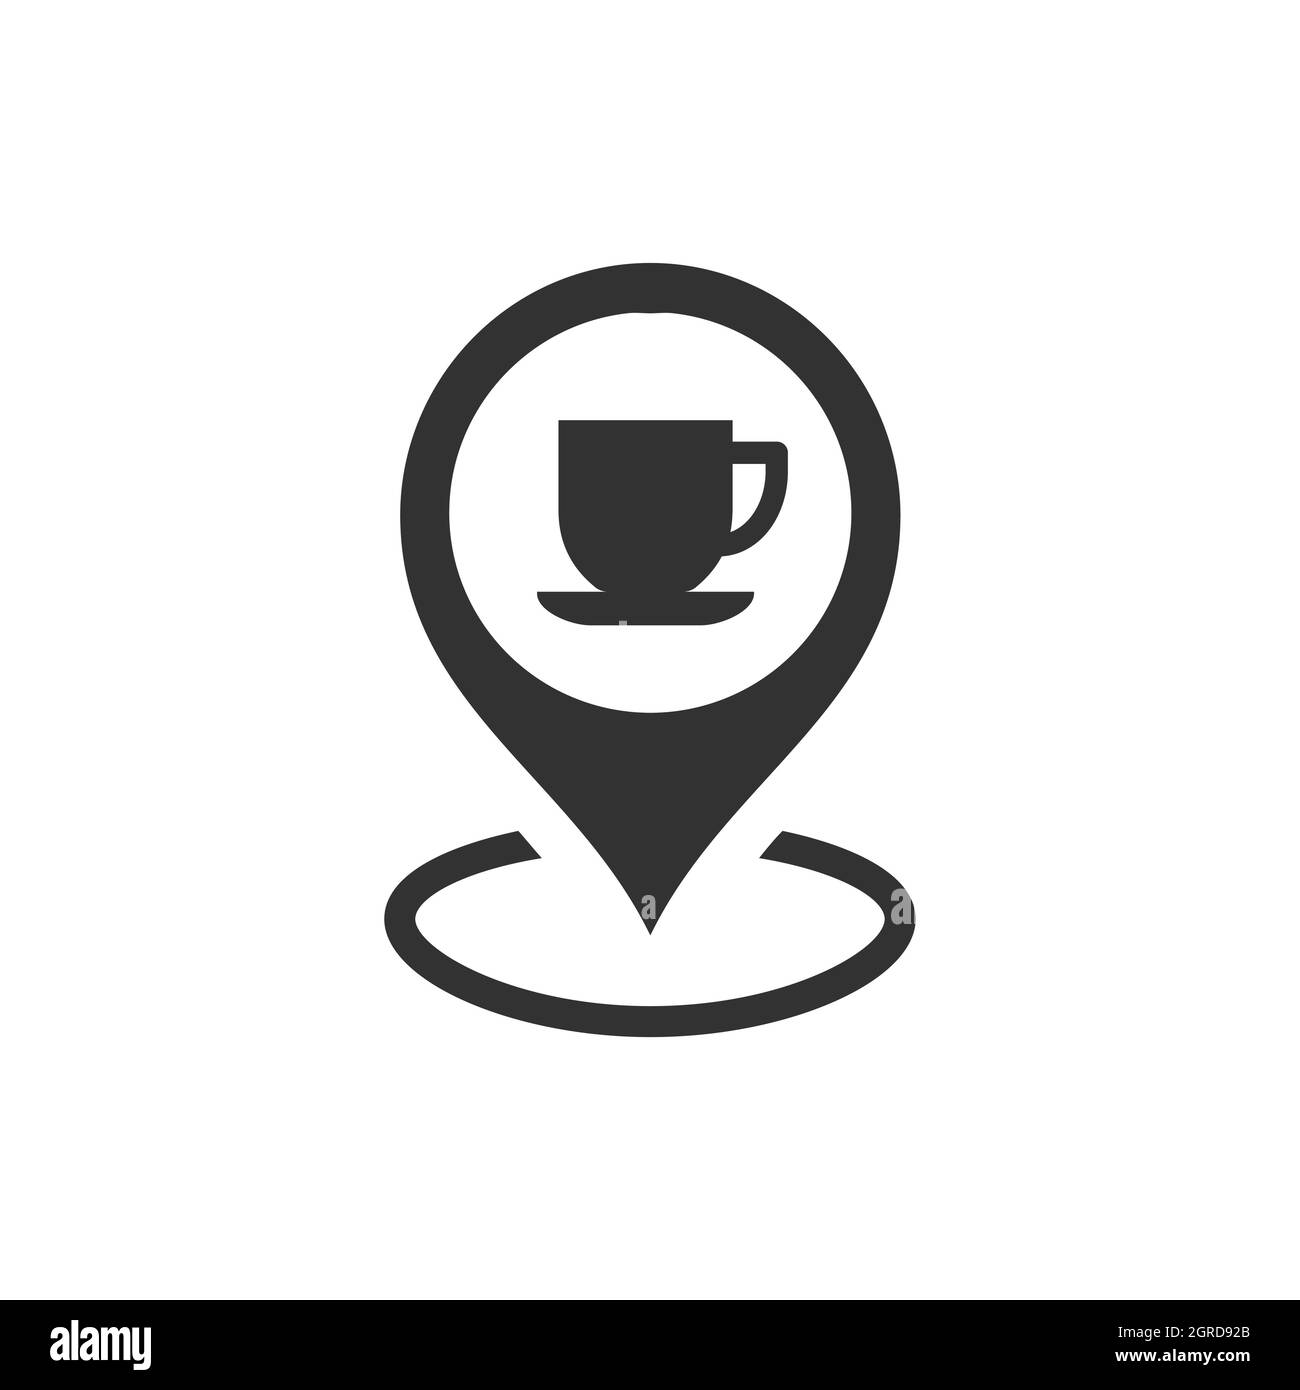 Pin on Coffee Shop